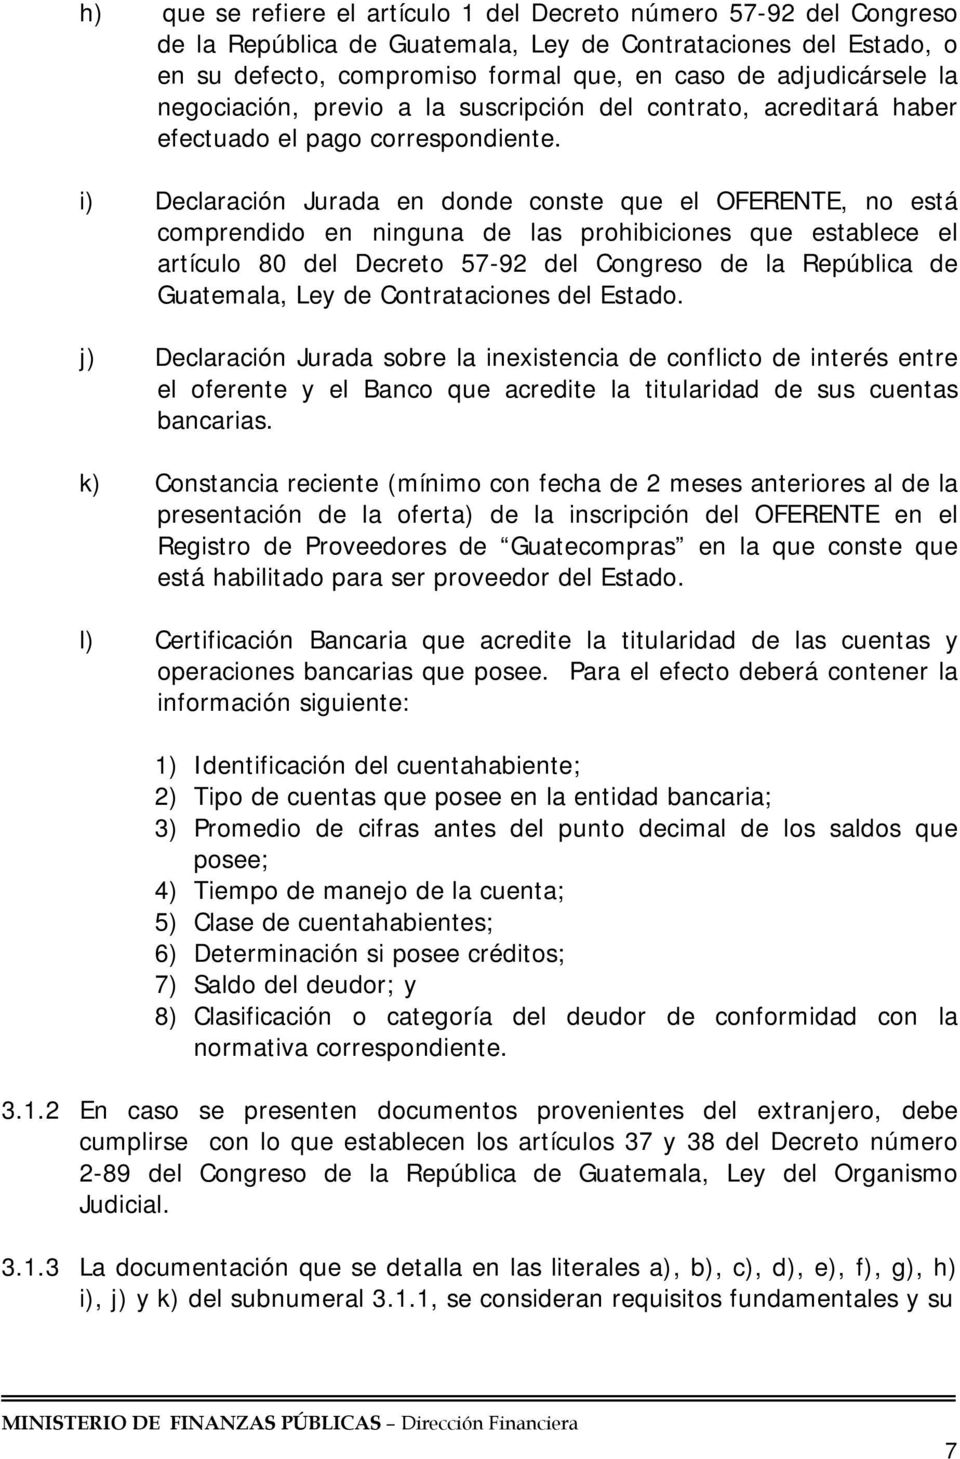 i) Declaración Jurada en donde conste que el OFERENTE, no está comprendido en ninguna de las prohibiciones que establece el artículo 80 del Decreto 57-92 del Congreso de la República de Guatemala,